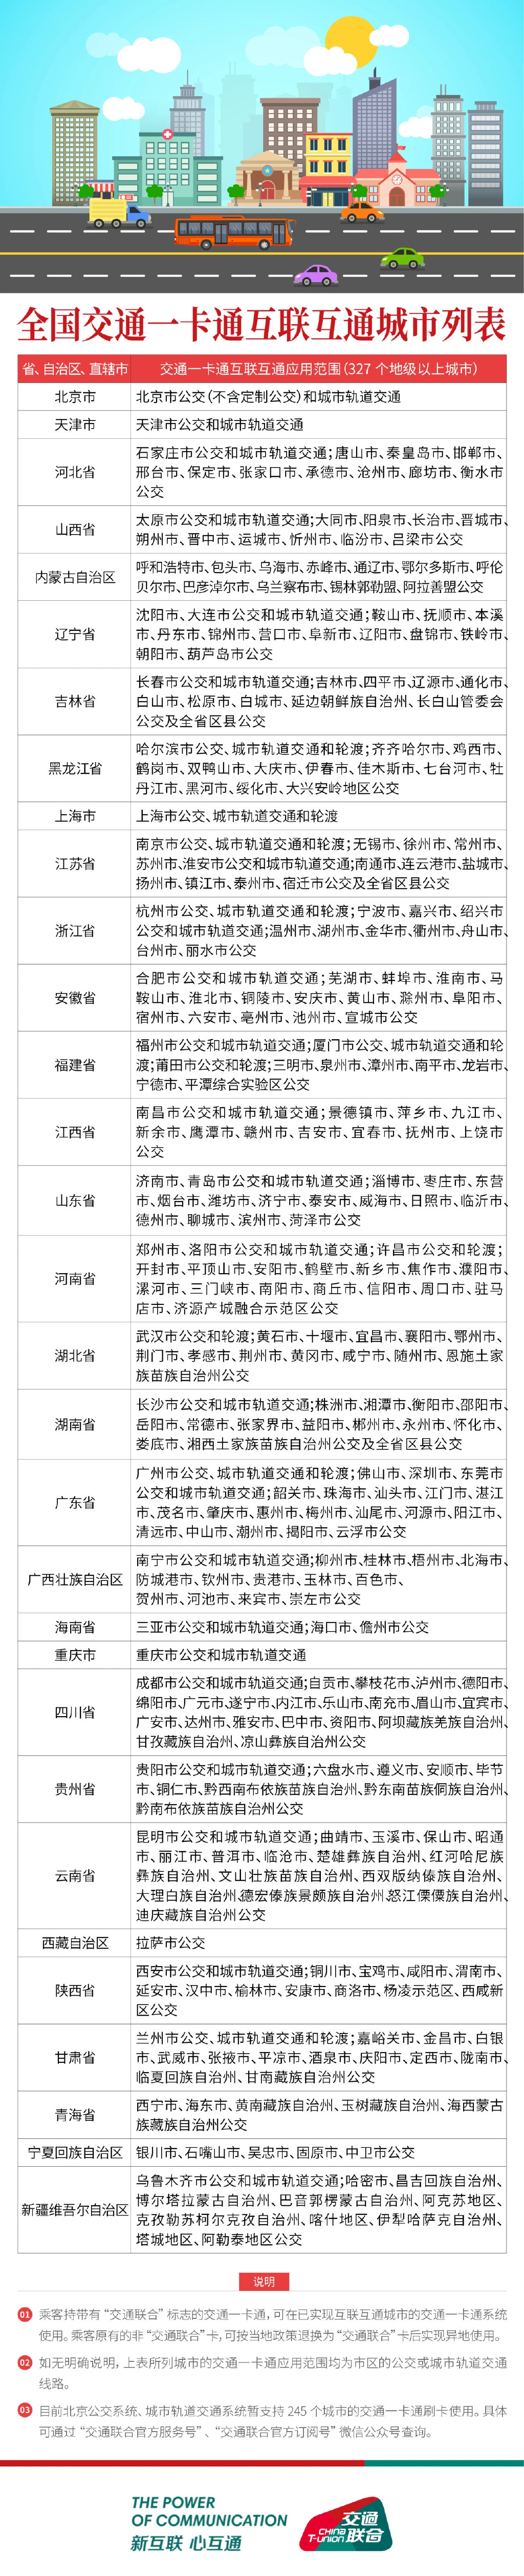 《碧蓝航线》上海公共交通卡获取攻略